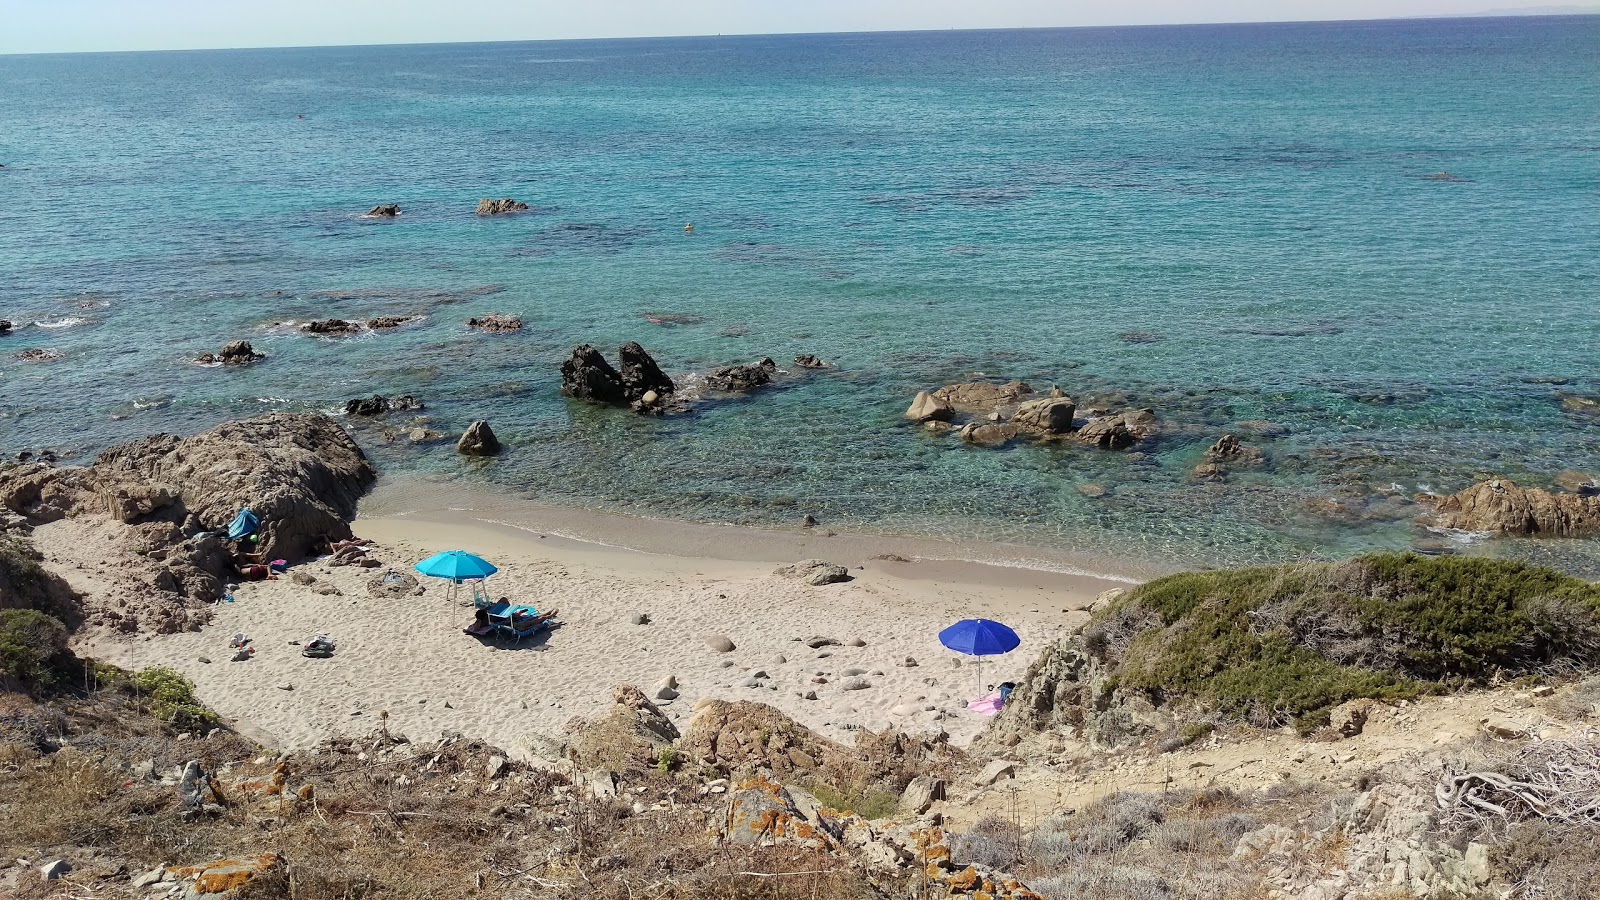 Photo of Spiaggia Rena Di Matteu located in natural area